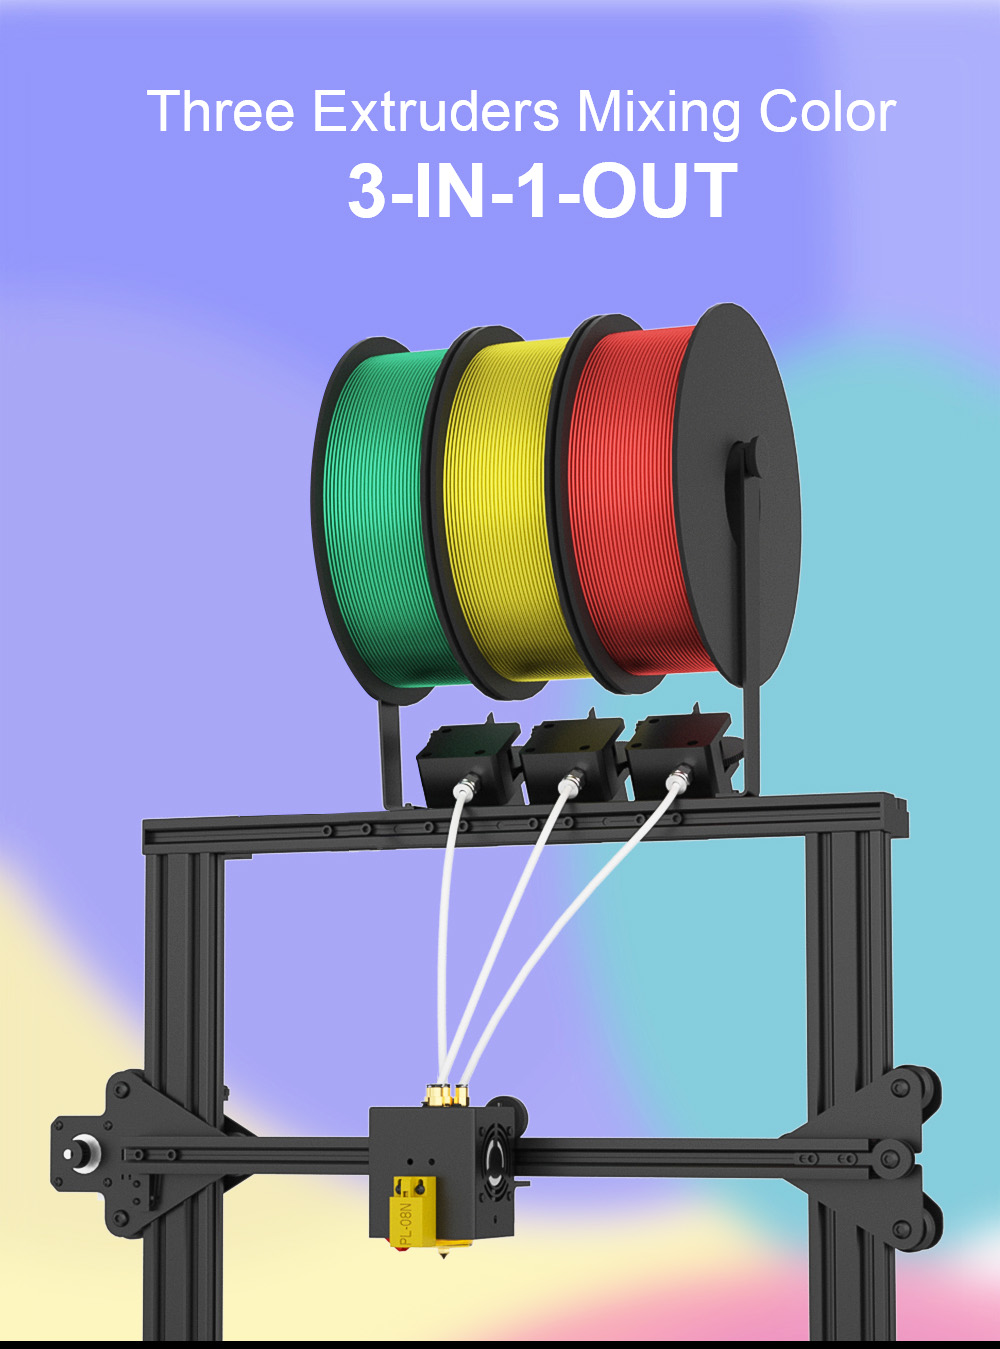 Zonestar Z8PM3 Extruder 3-IN-1-OUT kleurenmenging 3D-printer LCD-scherm Hoge precisie-resolutie DIY-kit - zwart